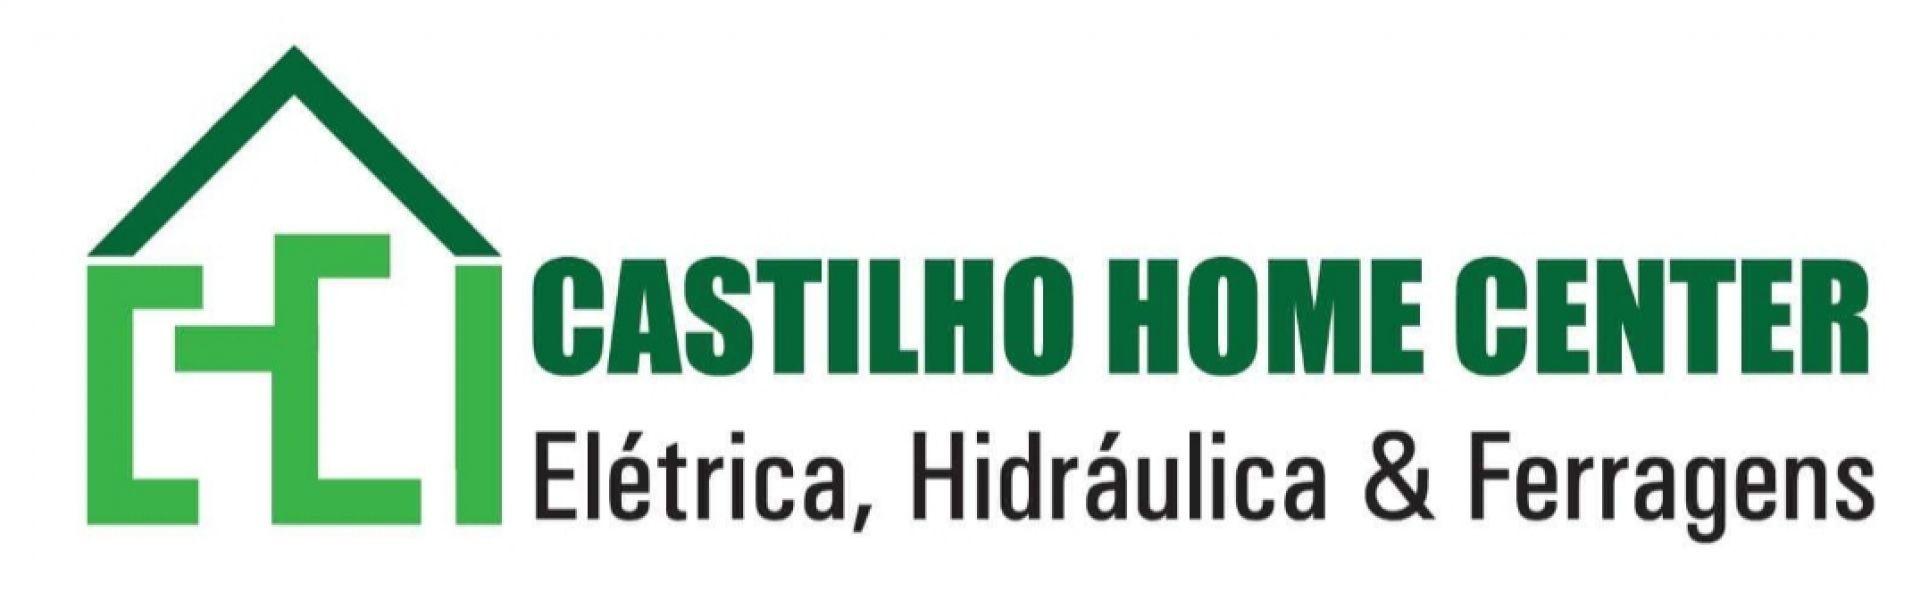  CASTILHO HOME CENTER 